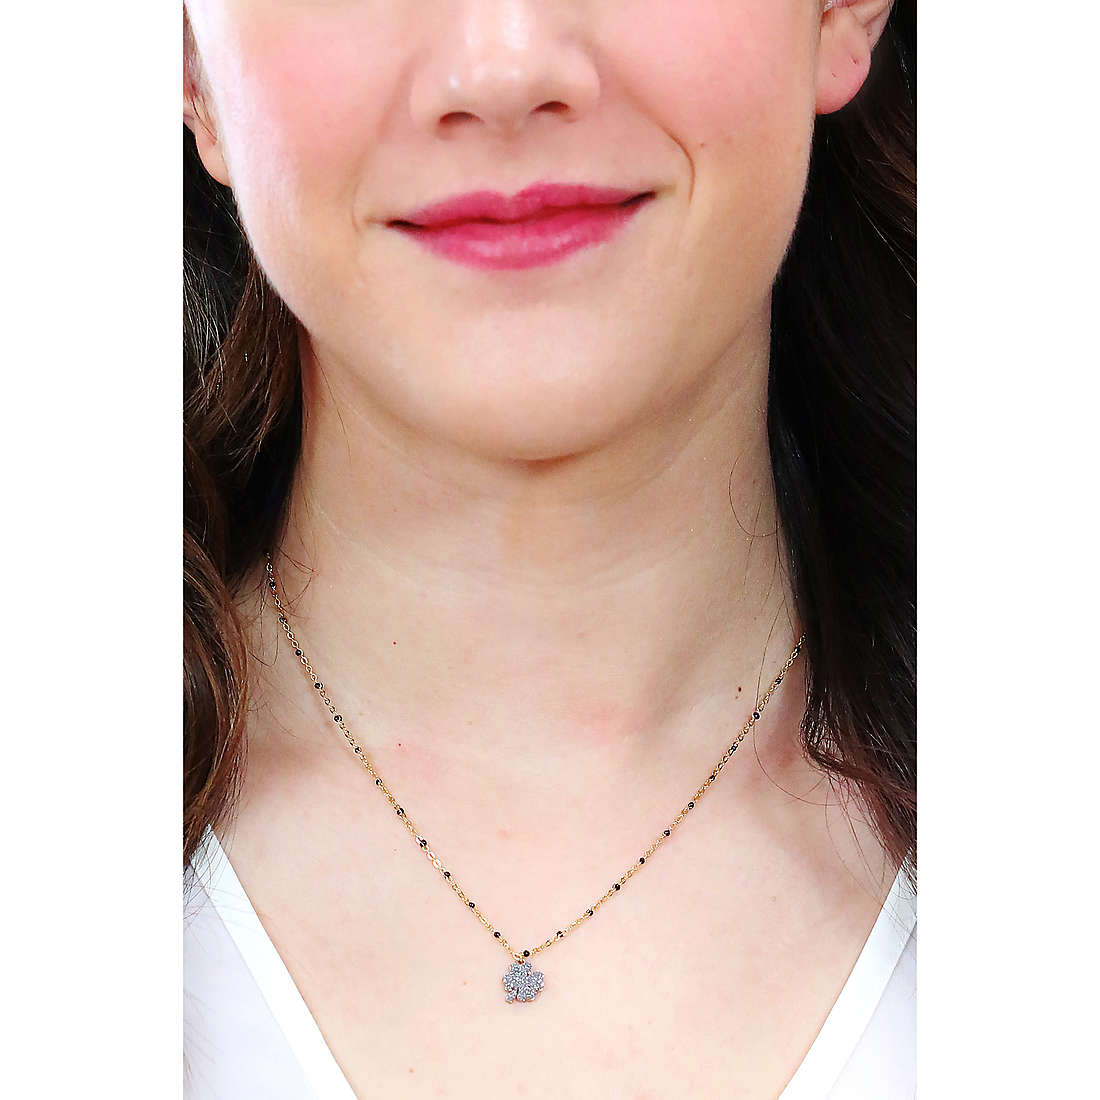 Rebecca necklaces Jolie woman SJOKAO73 wearing